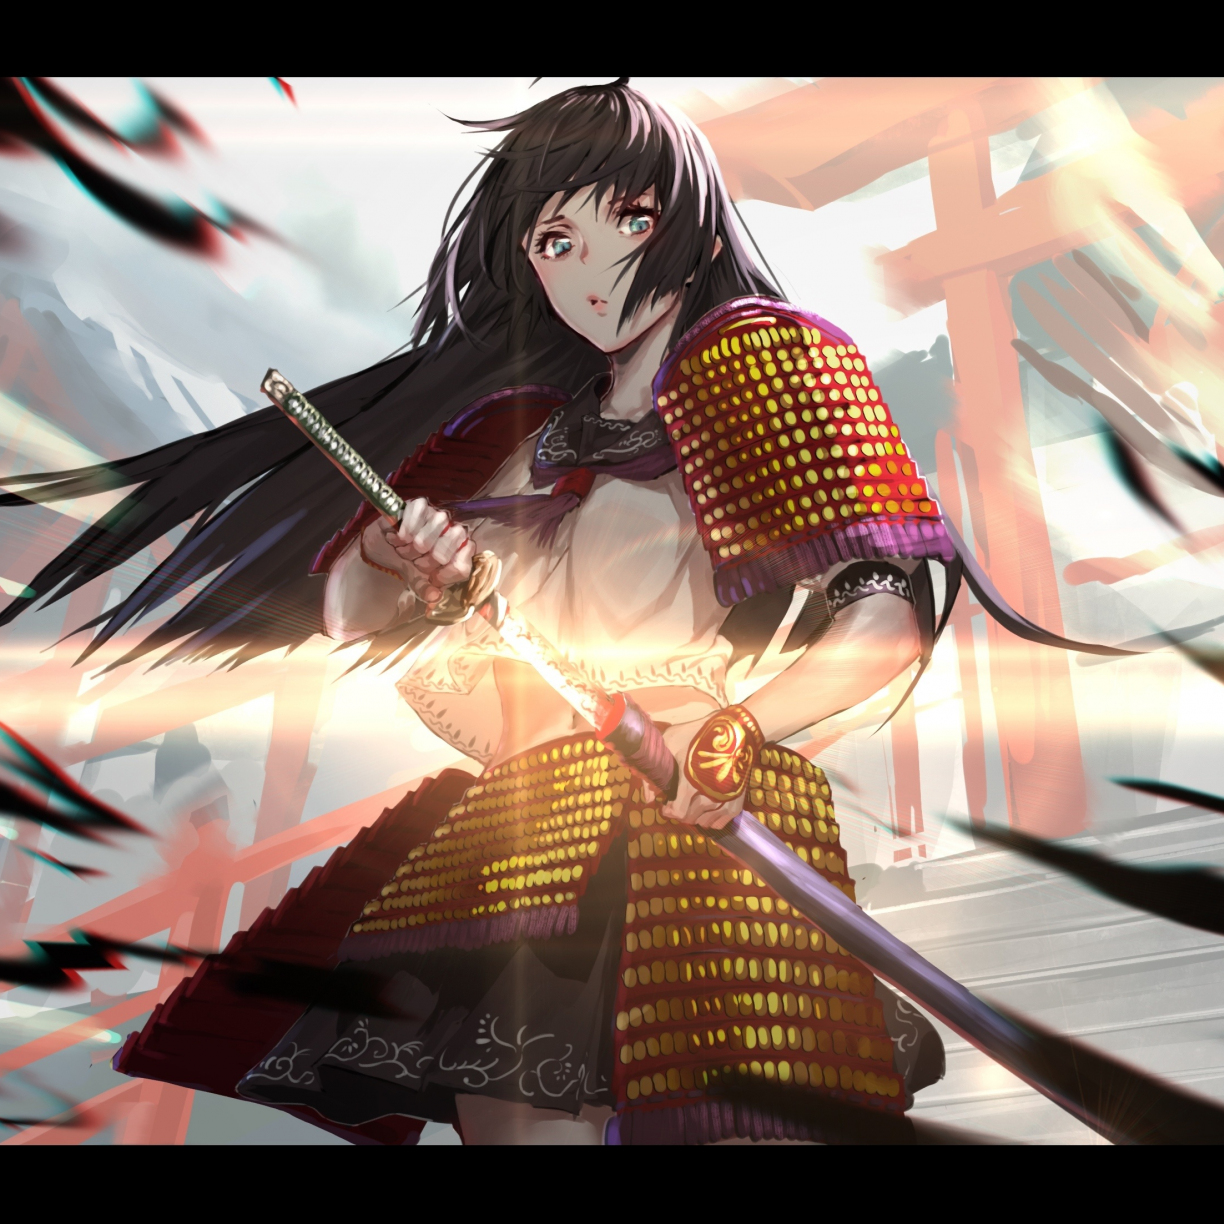 Samurai Inspired Anime Girl #12 by HisapiAI on DeviantArt